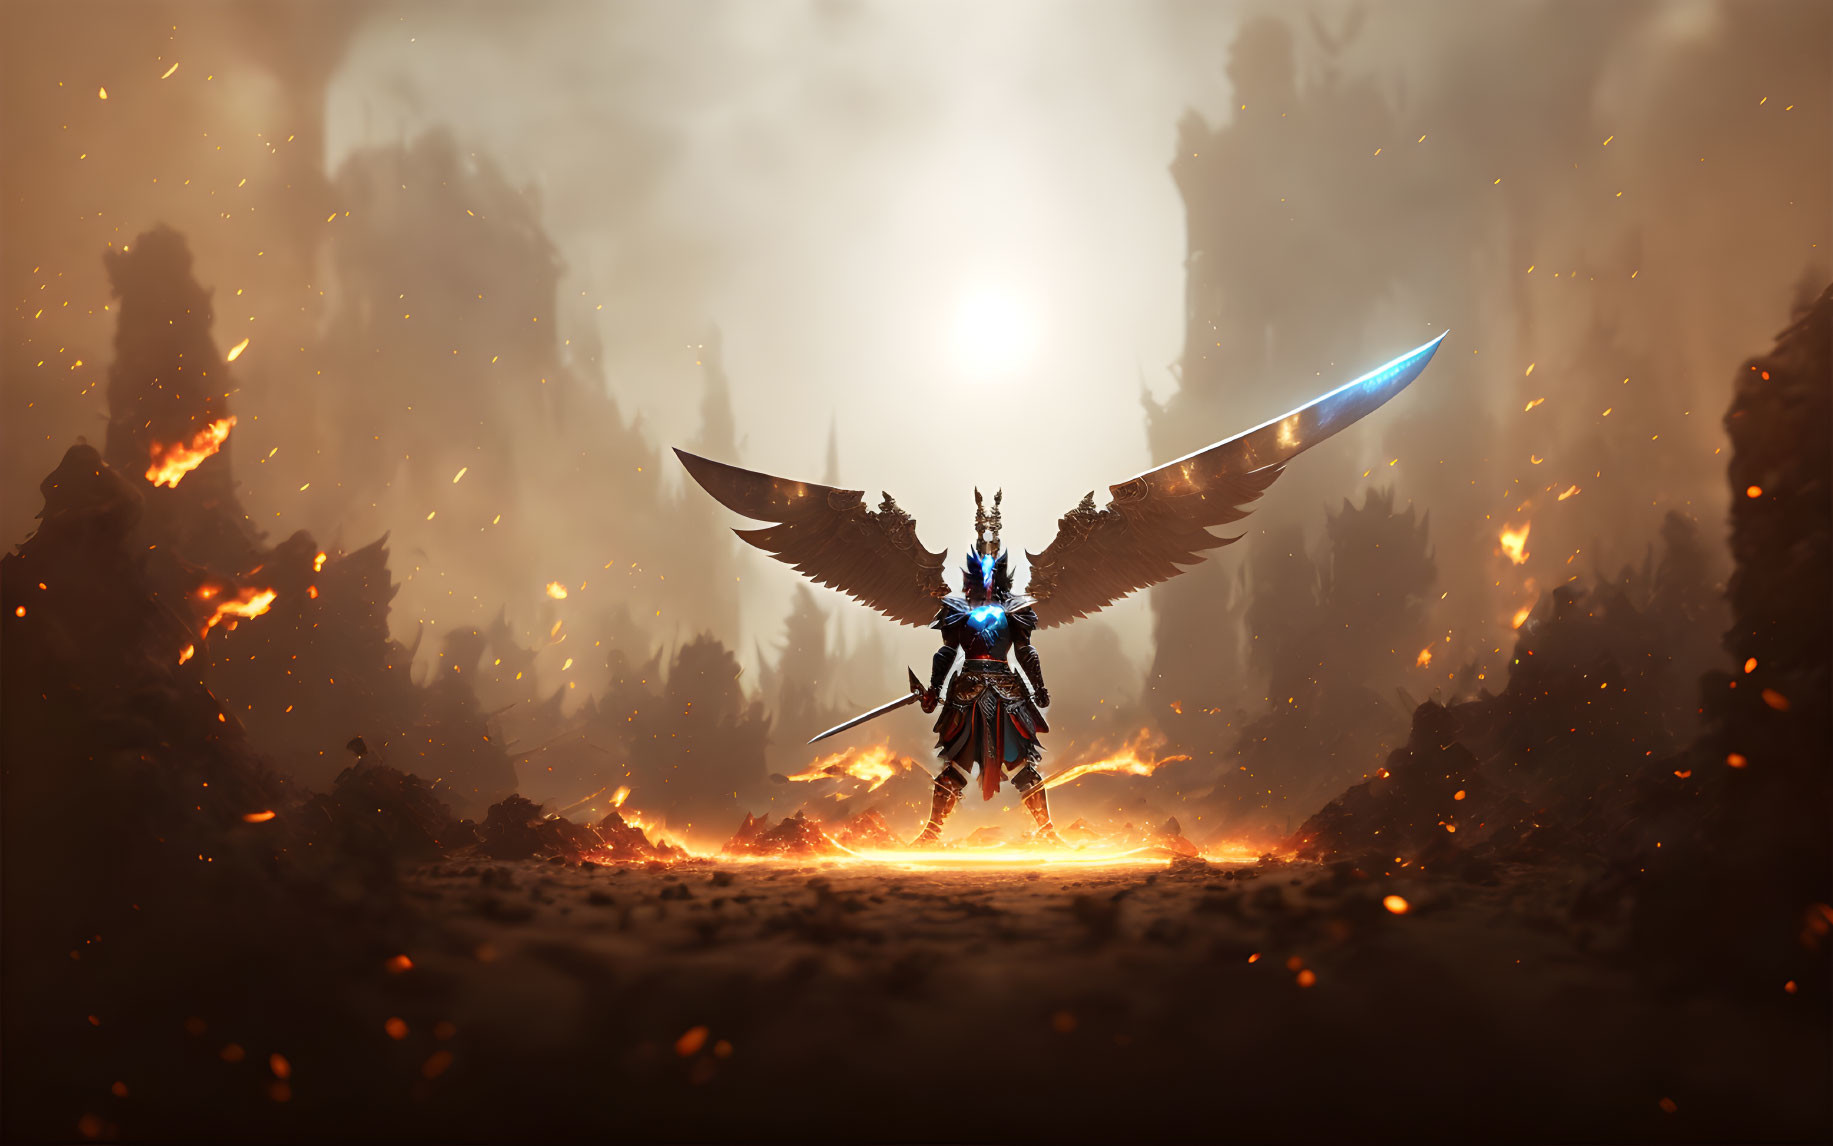 Winged warrior in ornate armor with glowing sword on fiery battlefield